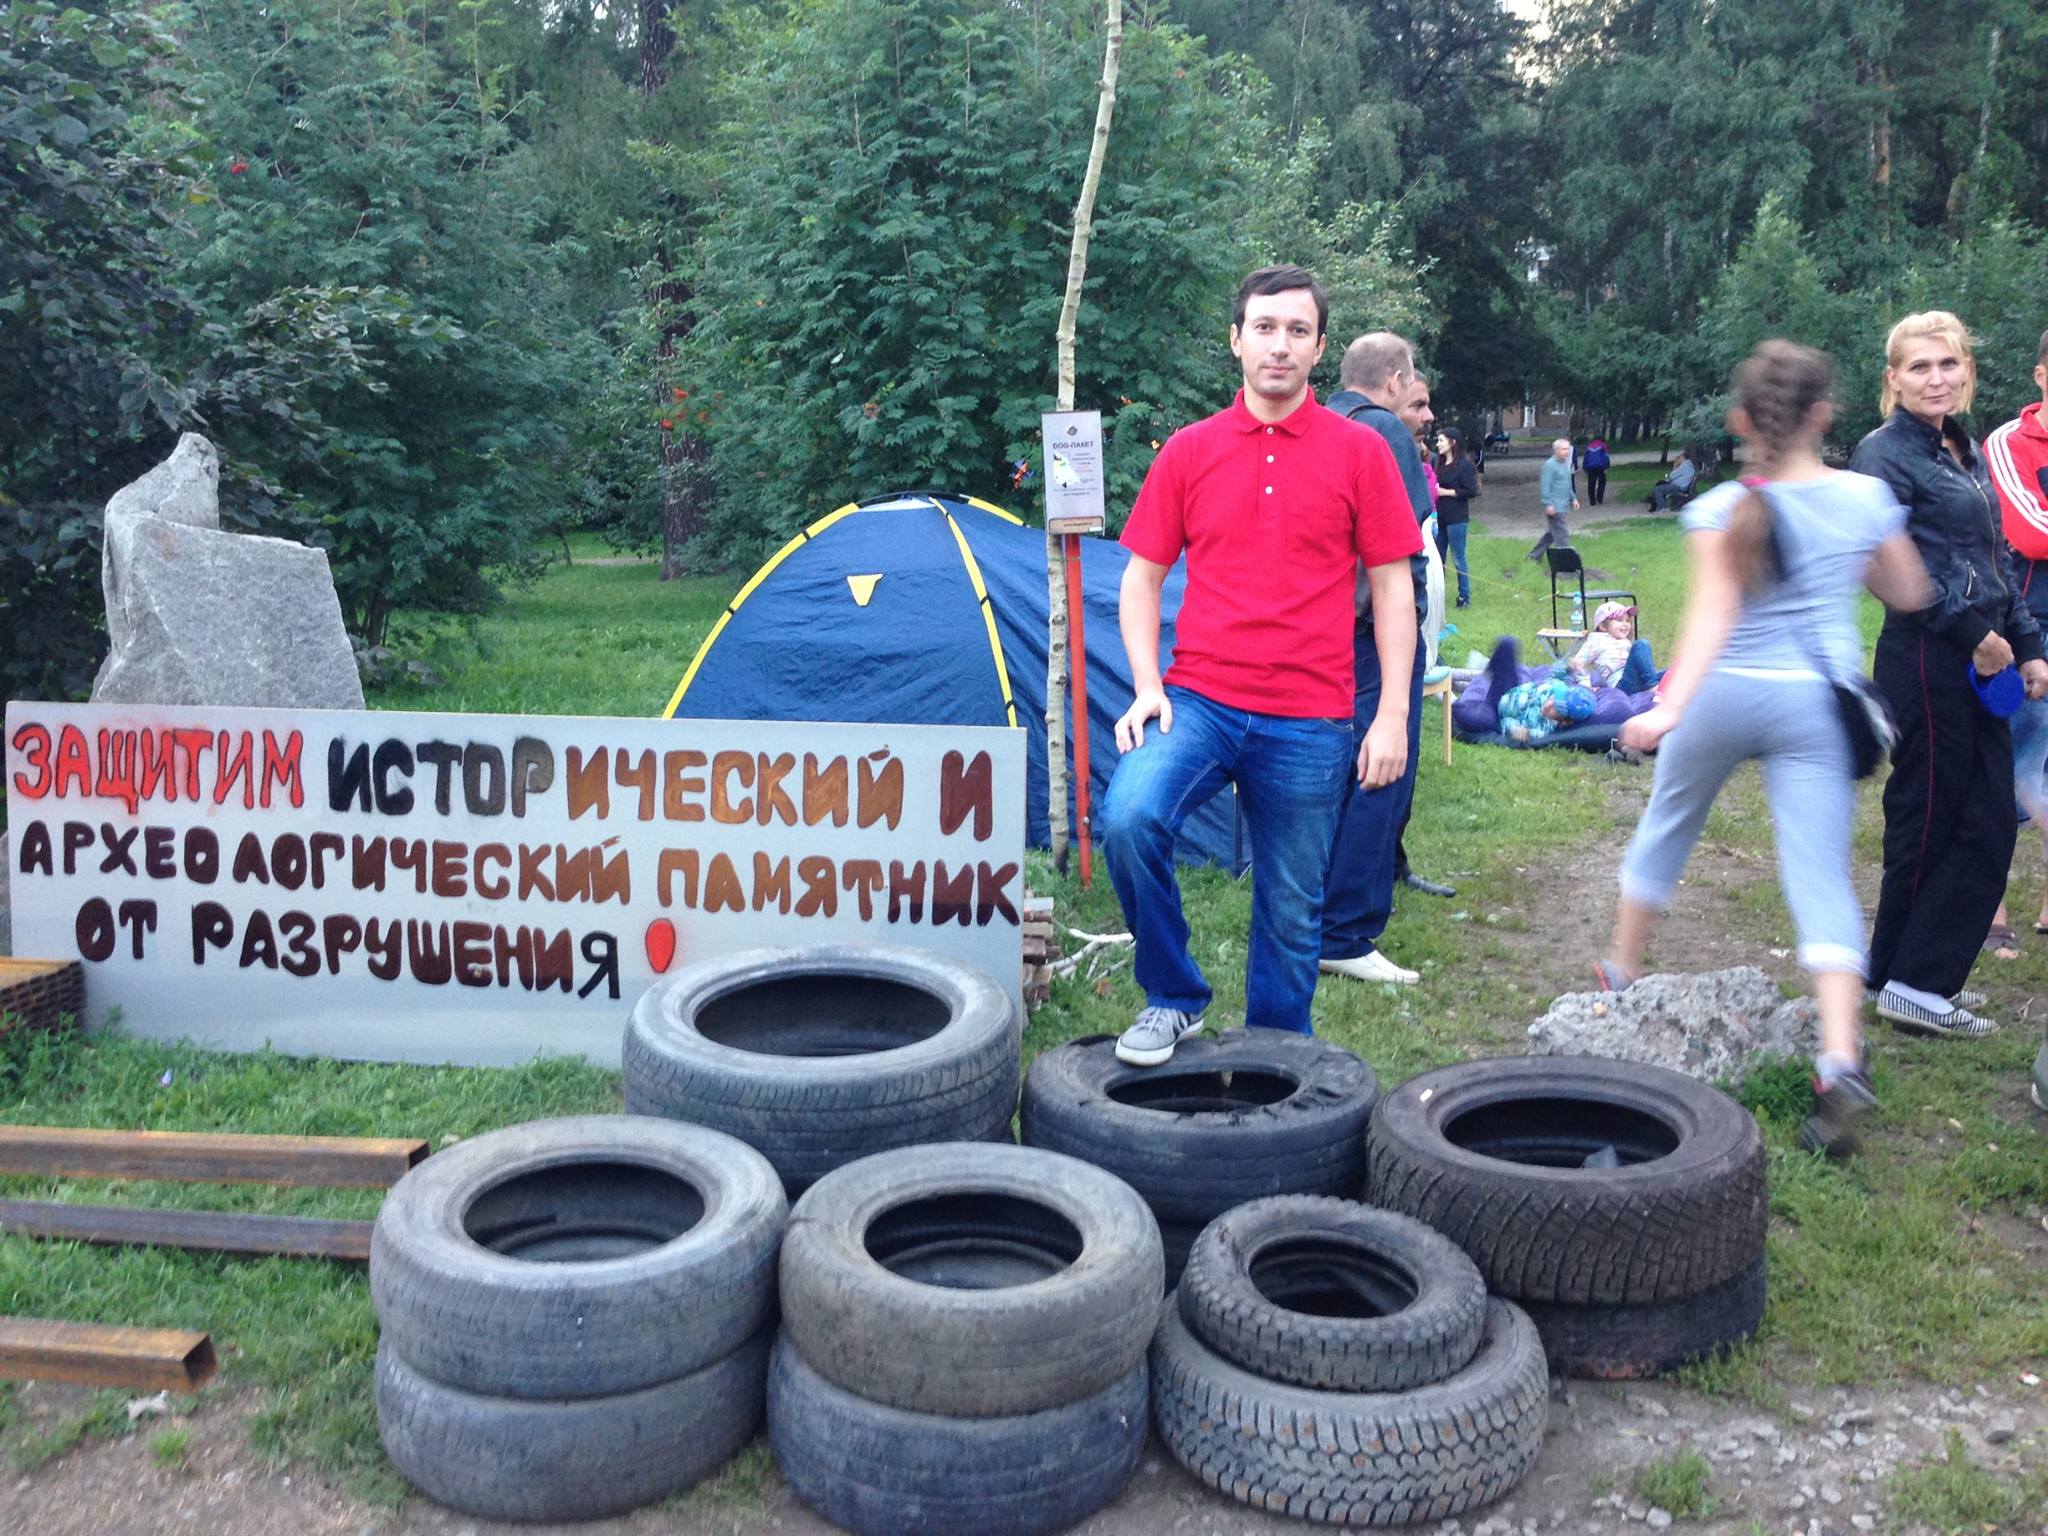 Палатки, покрышки, костры. Жители Екатеринбурга устроили свой майдан - Фото 3